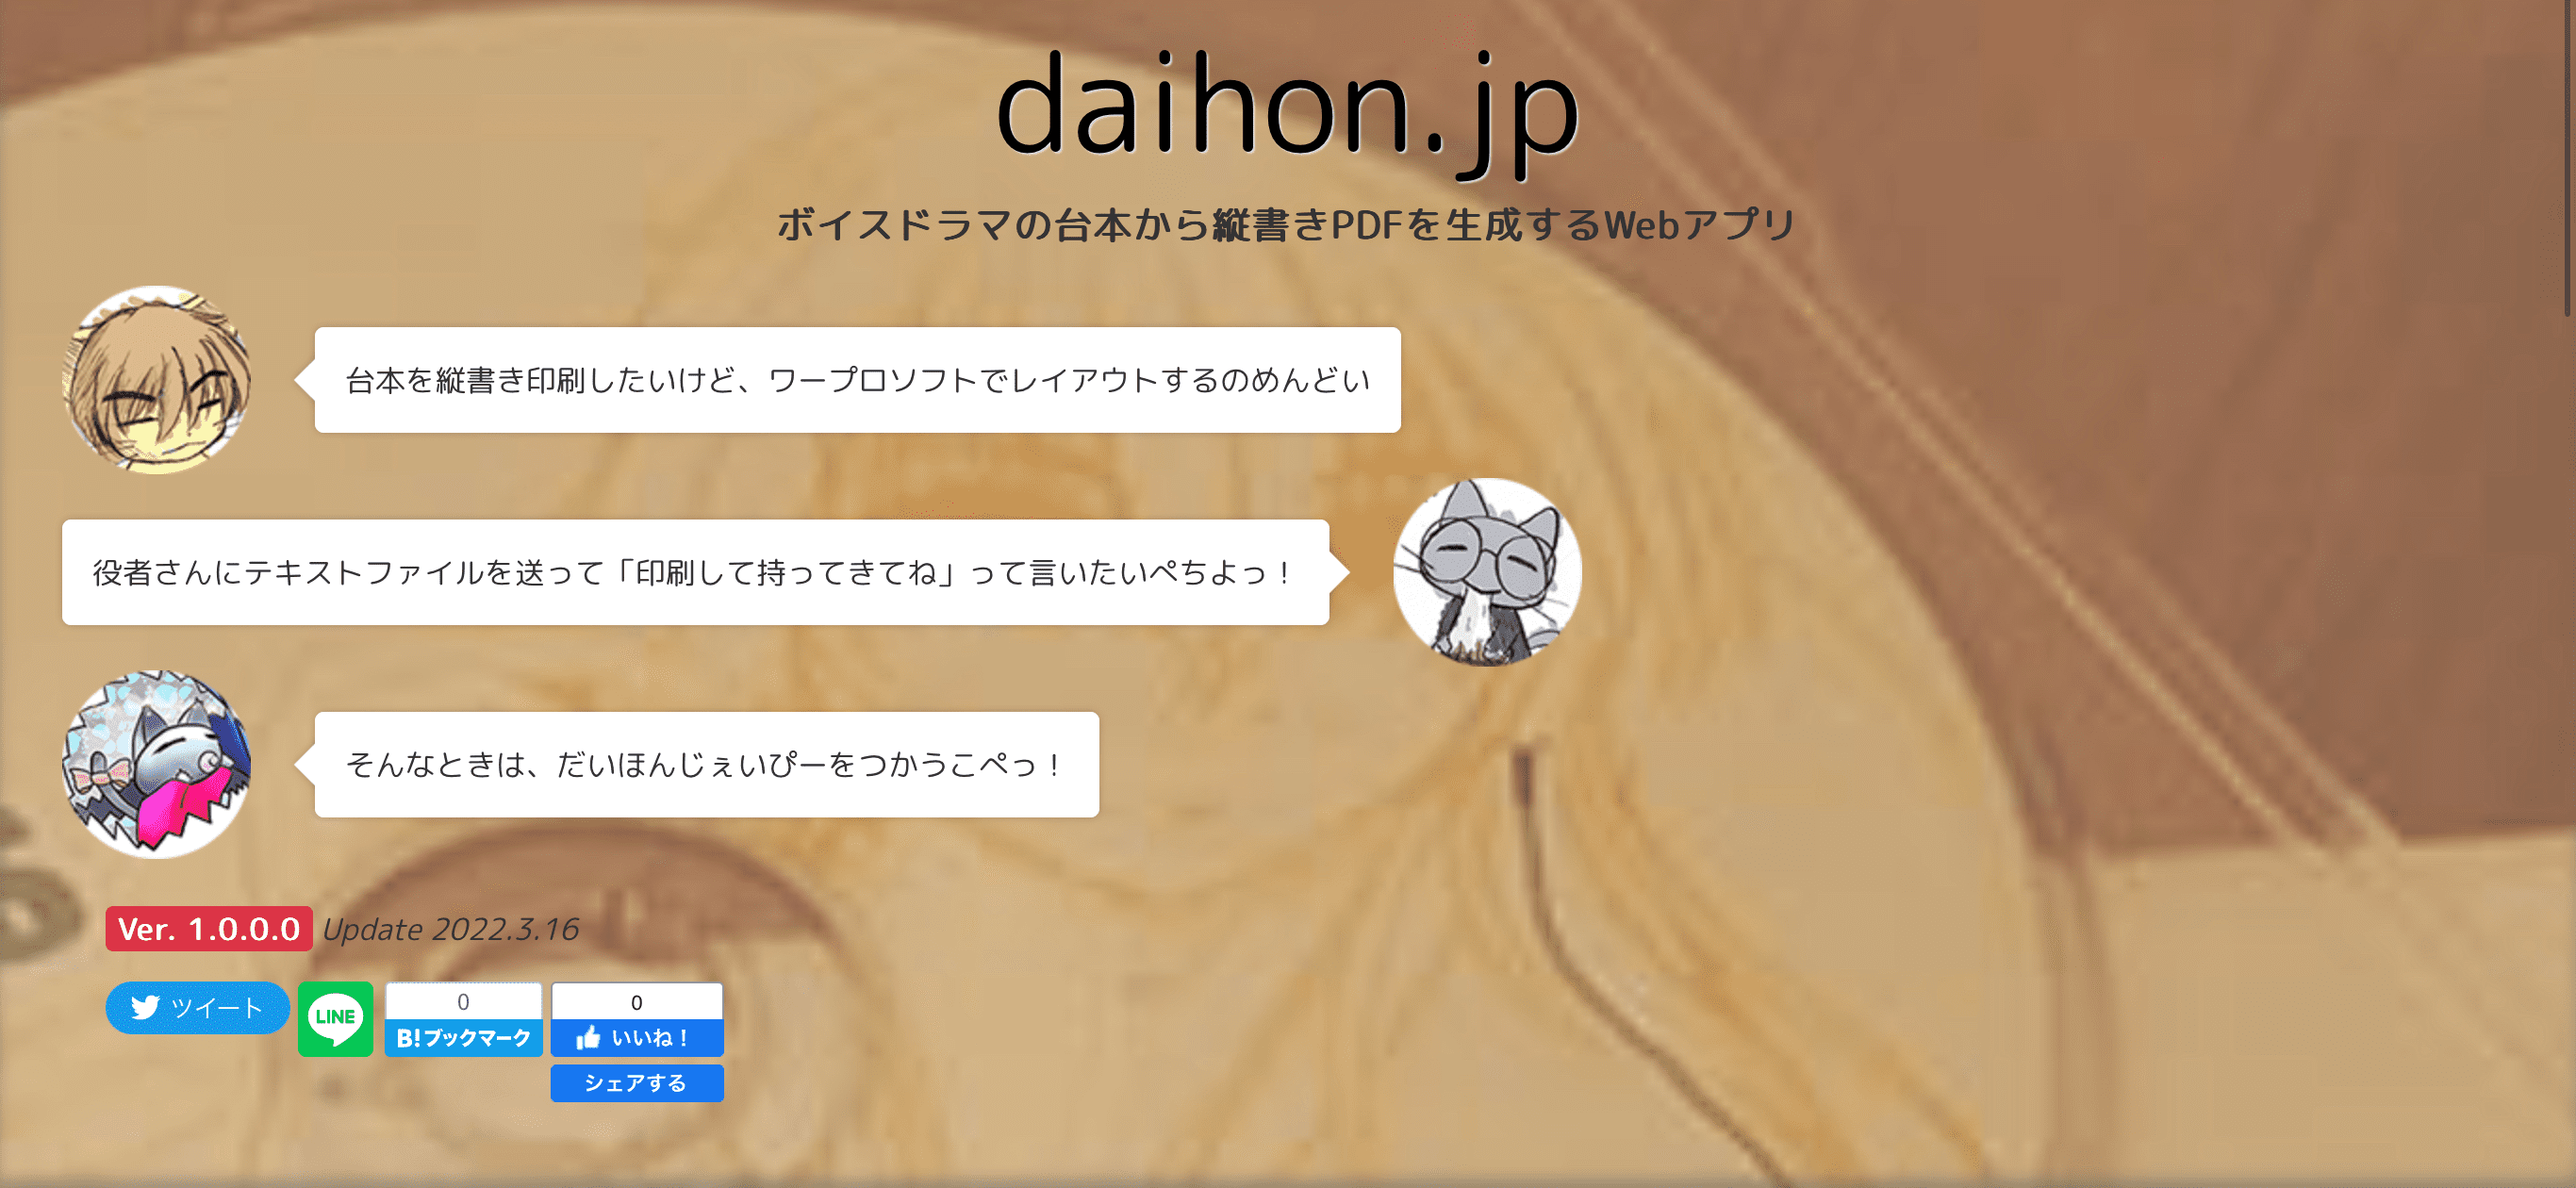 daihon.jp